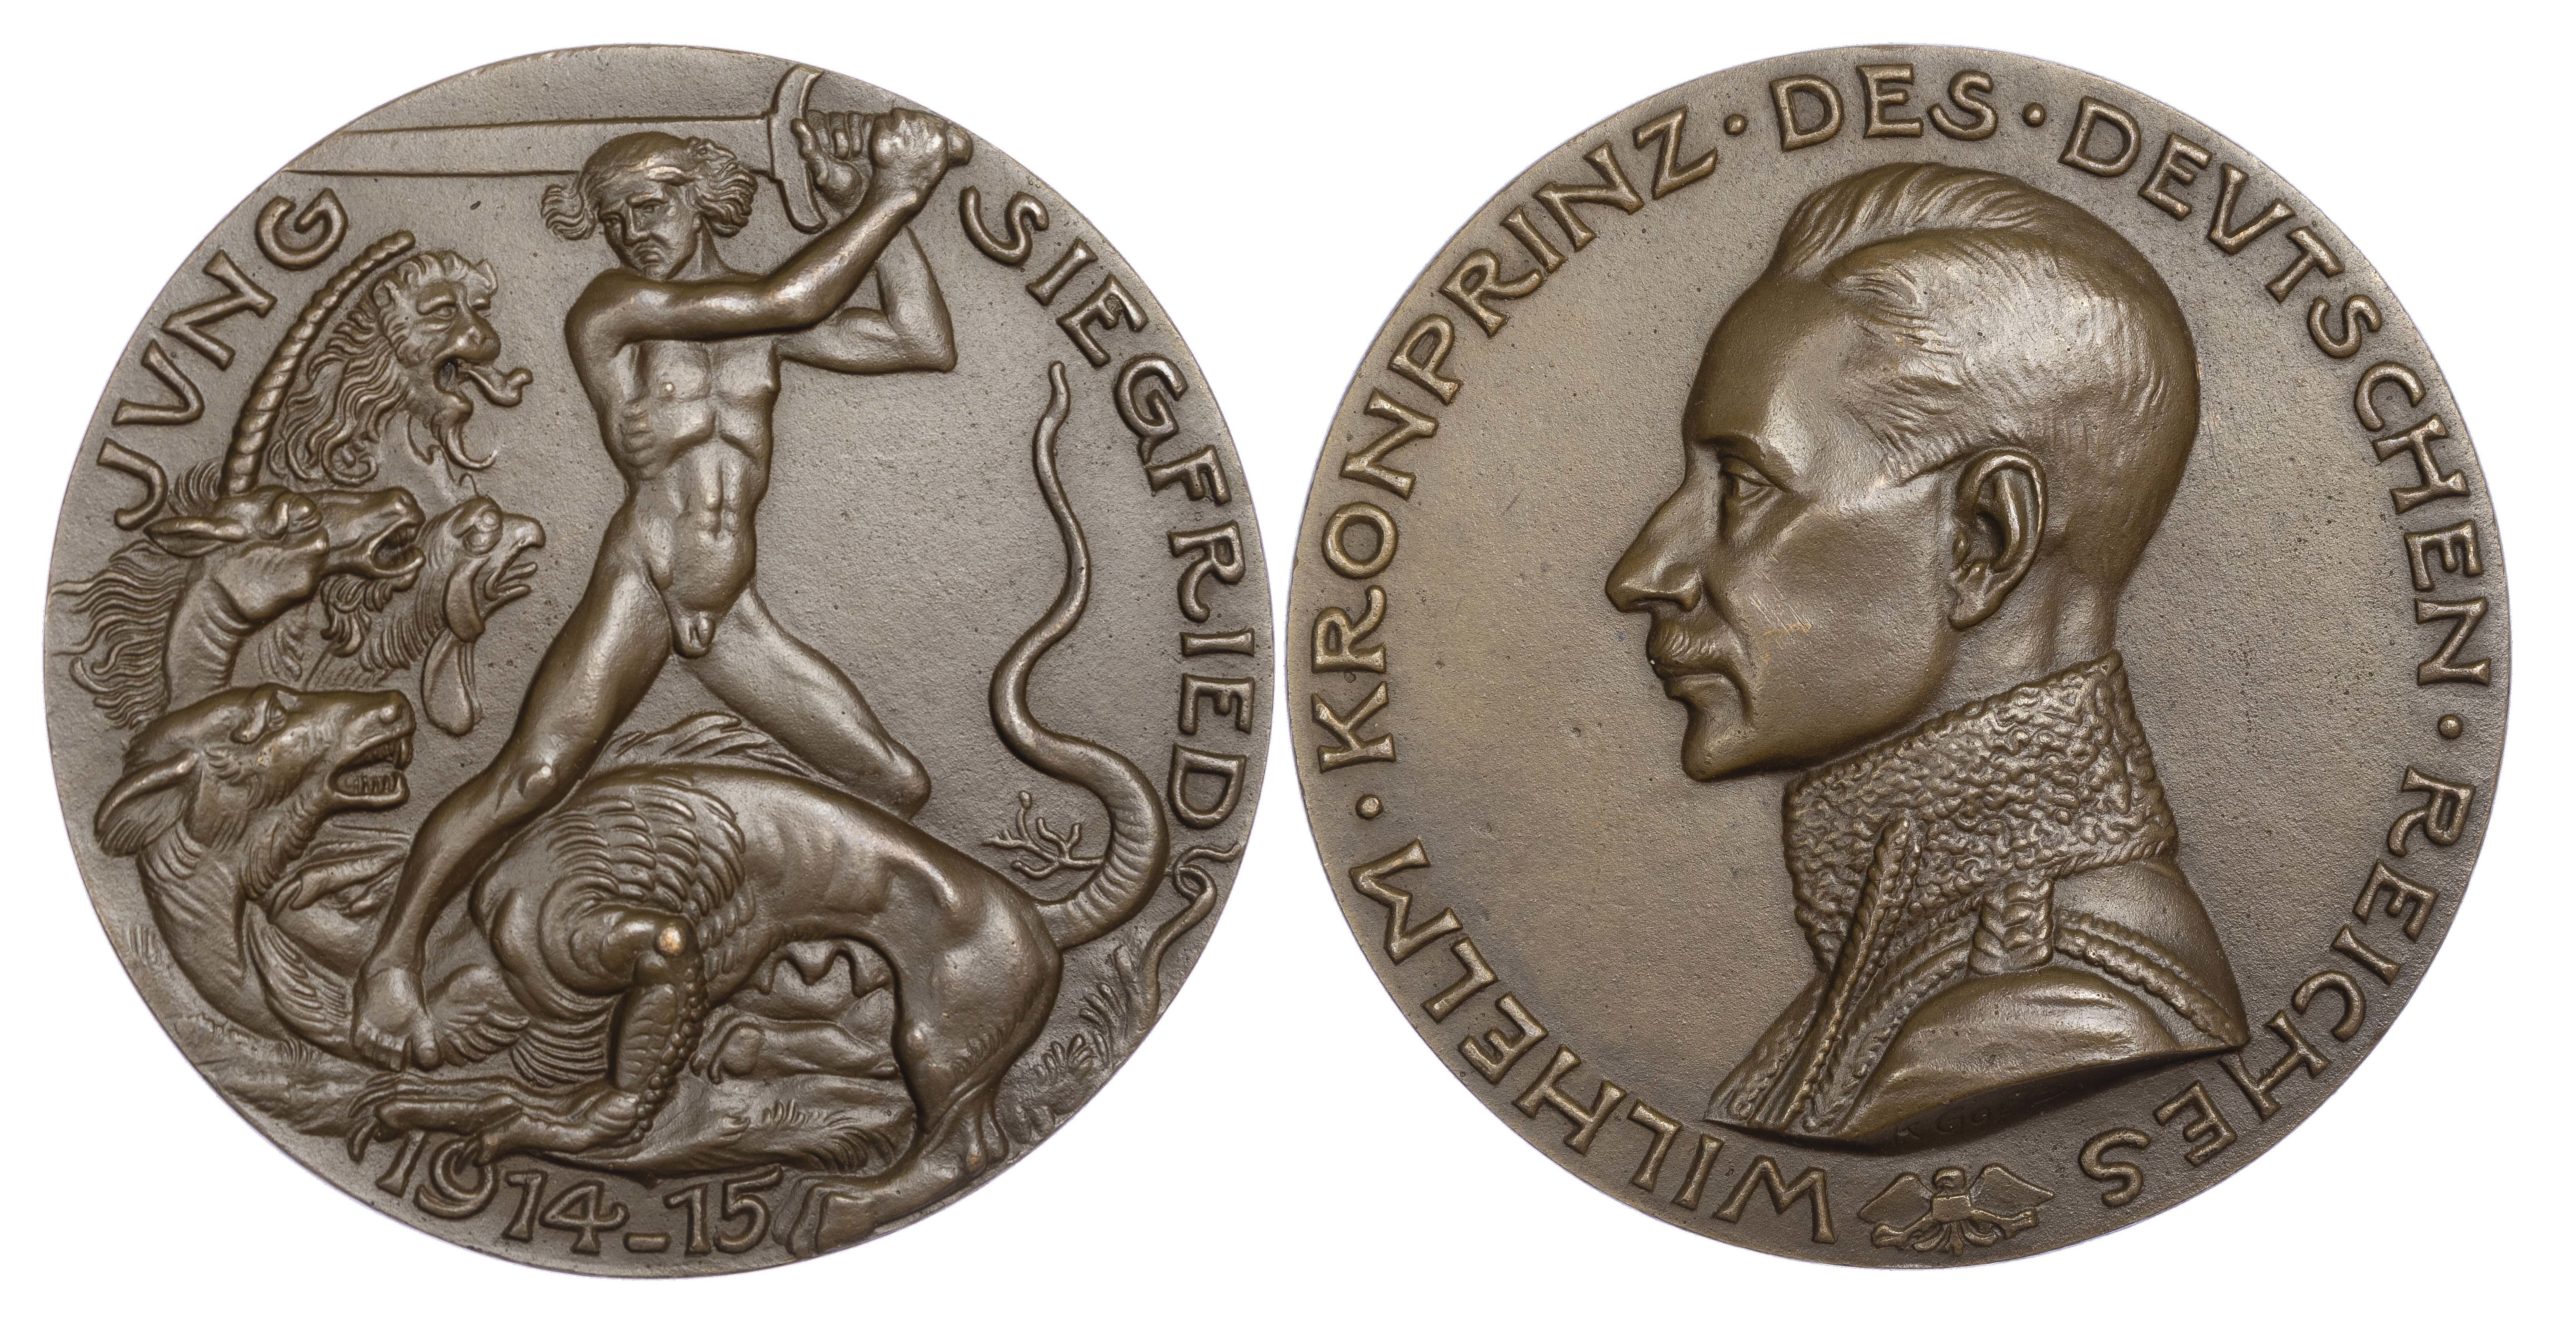 Germany, Crown Prince Wilhelm as hero of the battle of Verdun. AE medal 1915